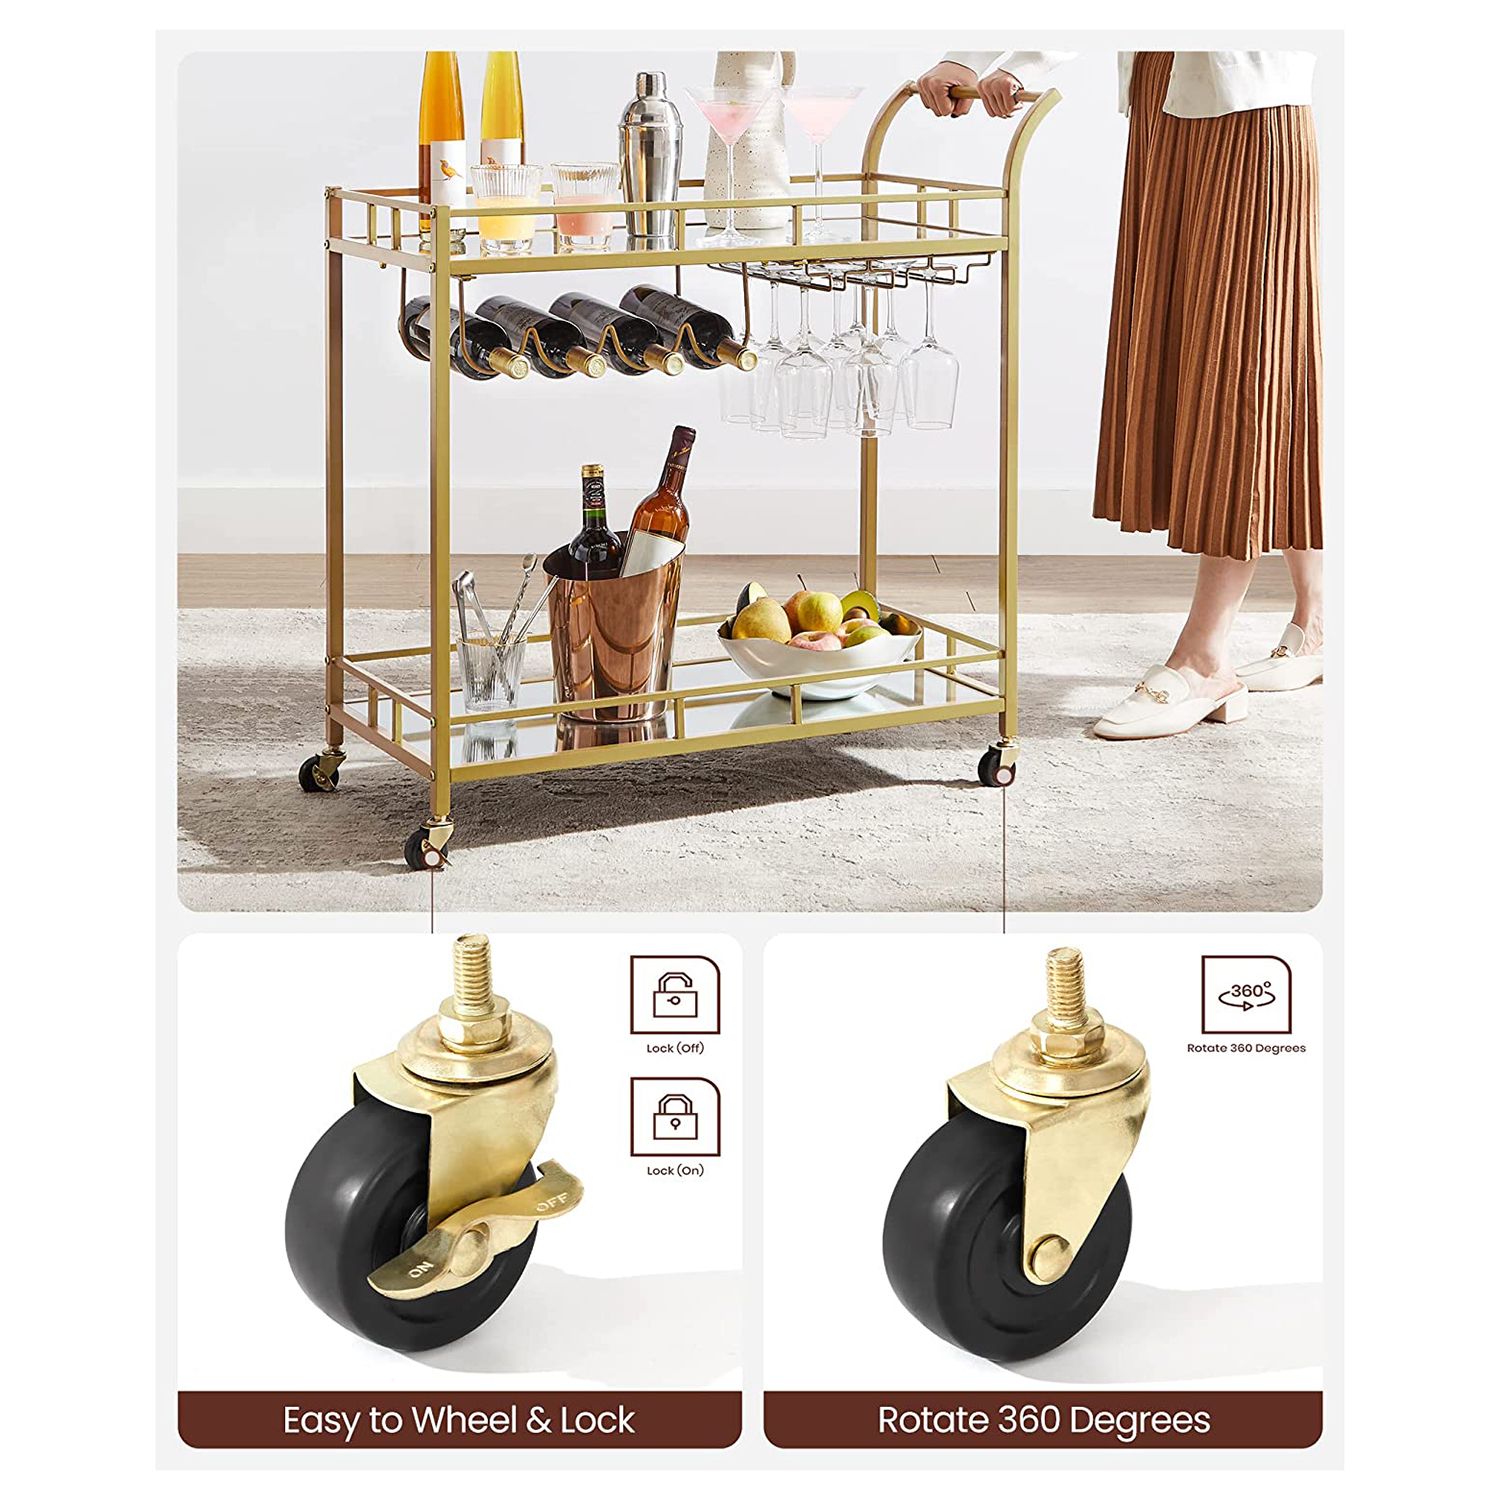 Virtuvinis vežimėlis auksinės spalvos su vyno laikikliais ir veidrodinėmis lentynėlėmis 6